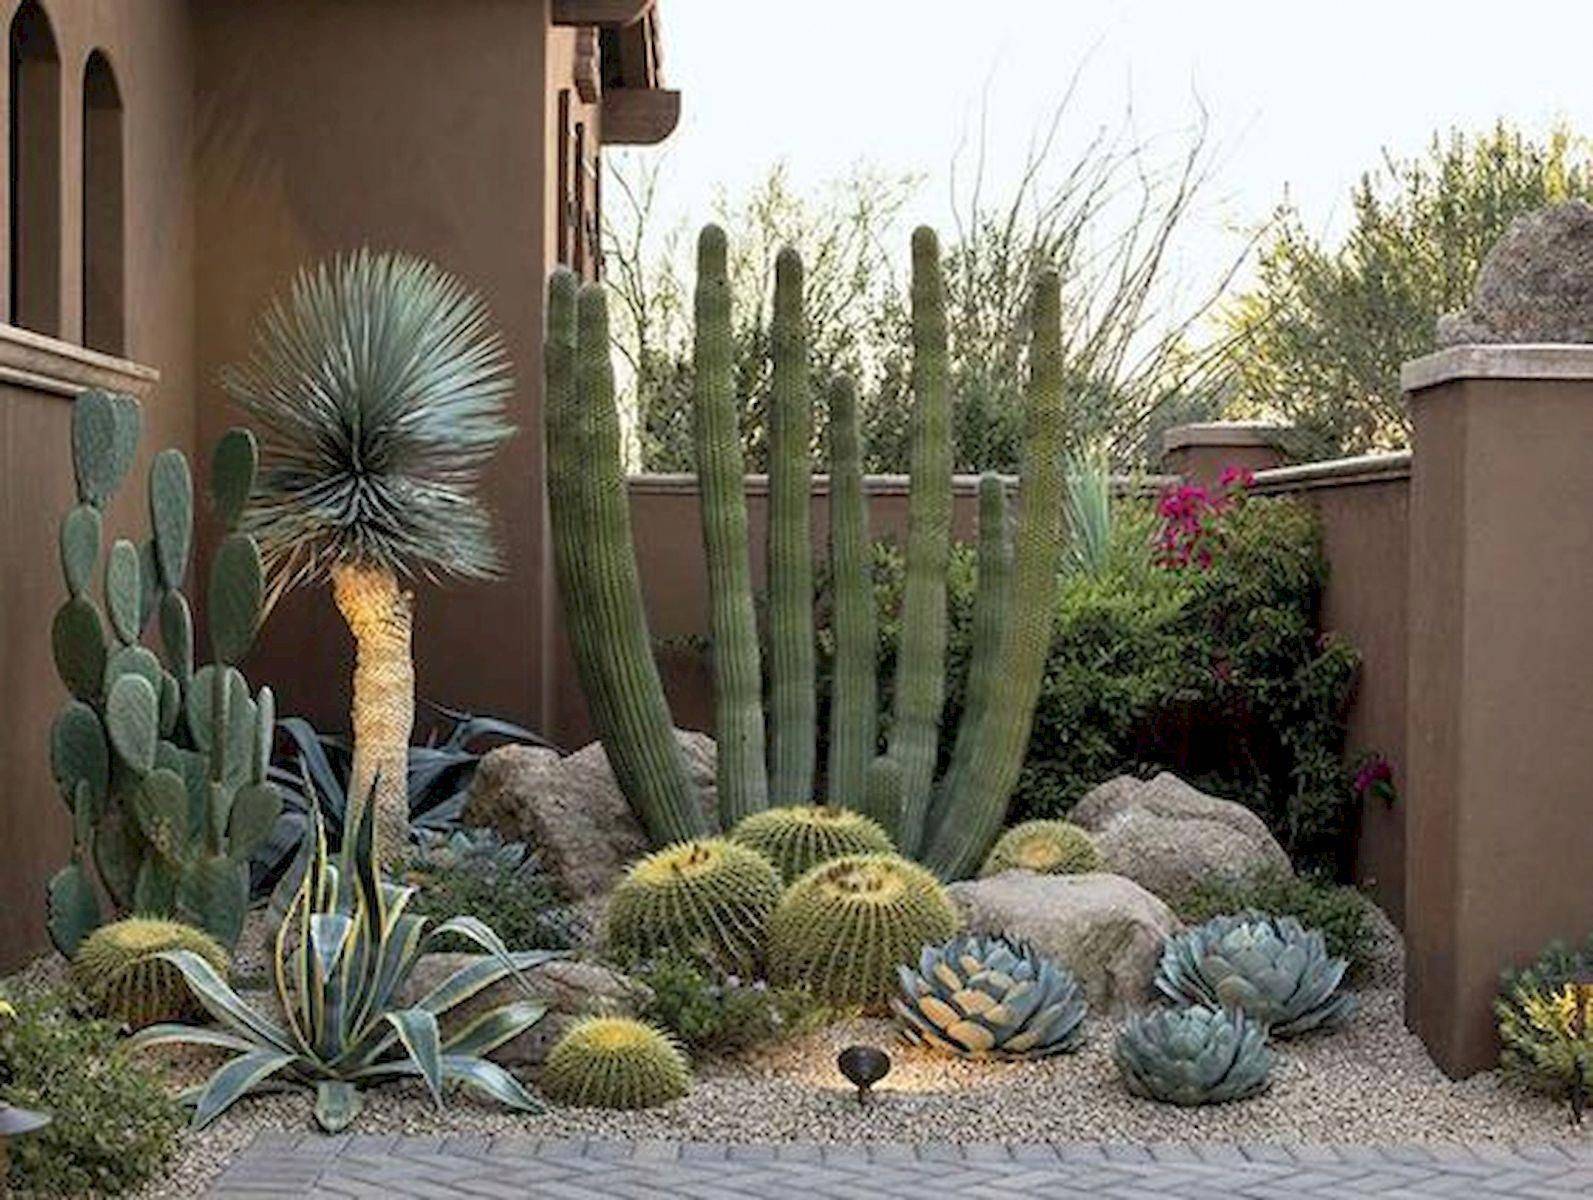 Stacked Cactus Garden Ideas Photograph